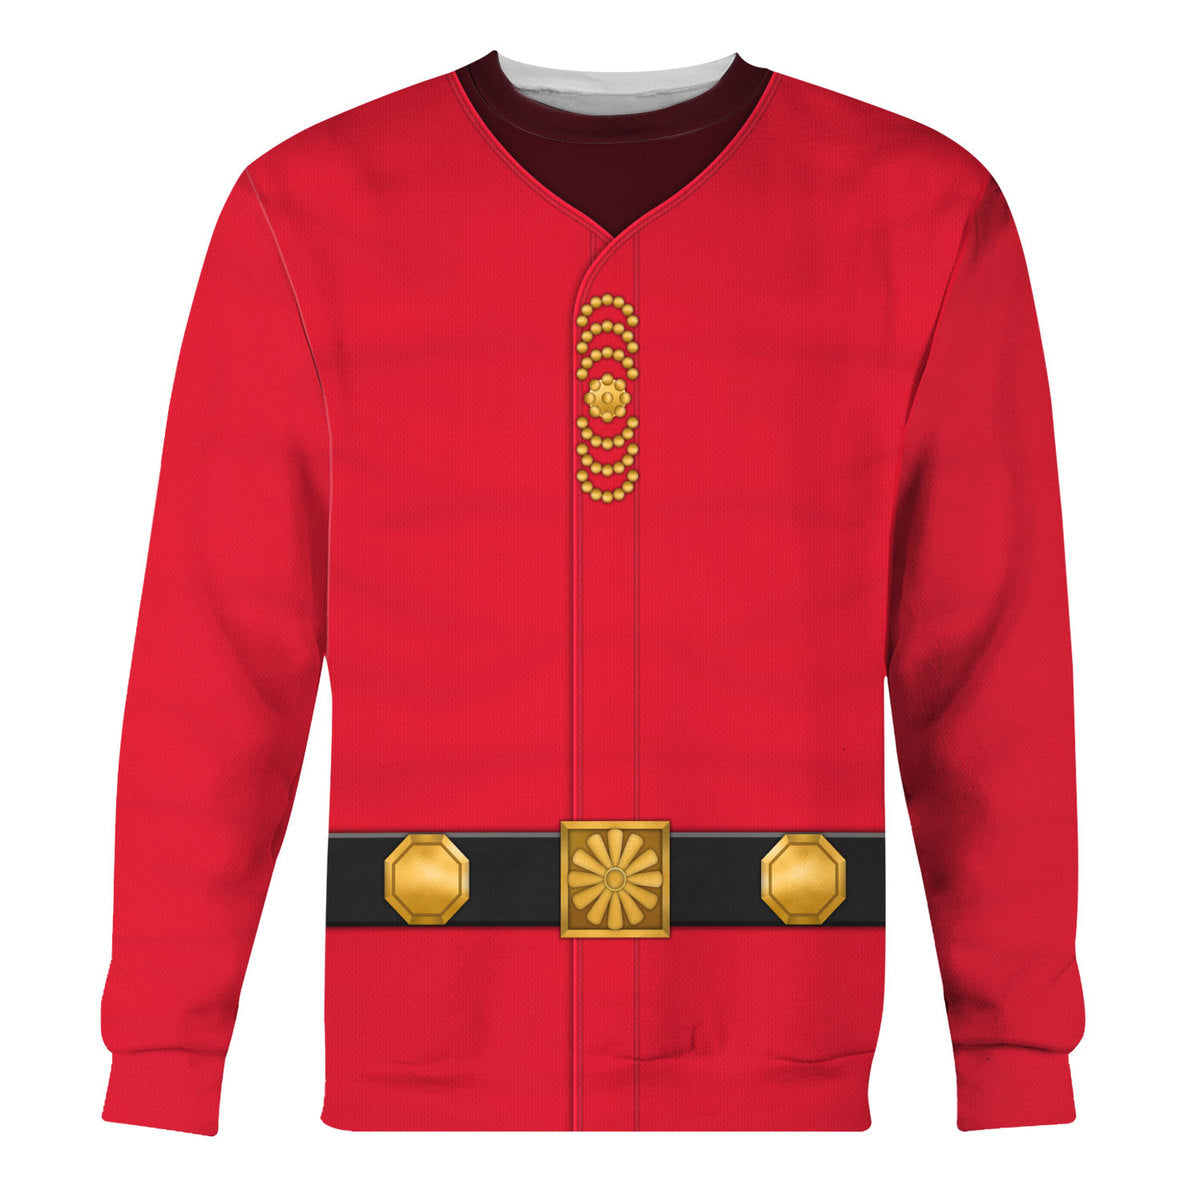 Star Trek Khan Noonien Singh Cool - Sweater - Ugly Christmas Sweater